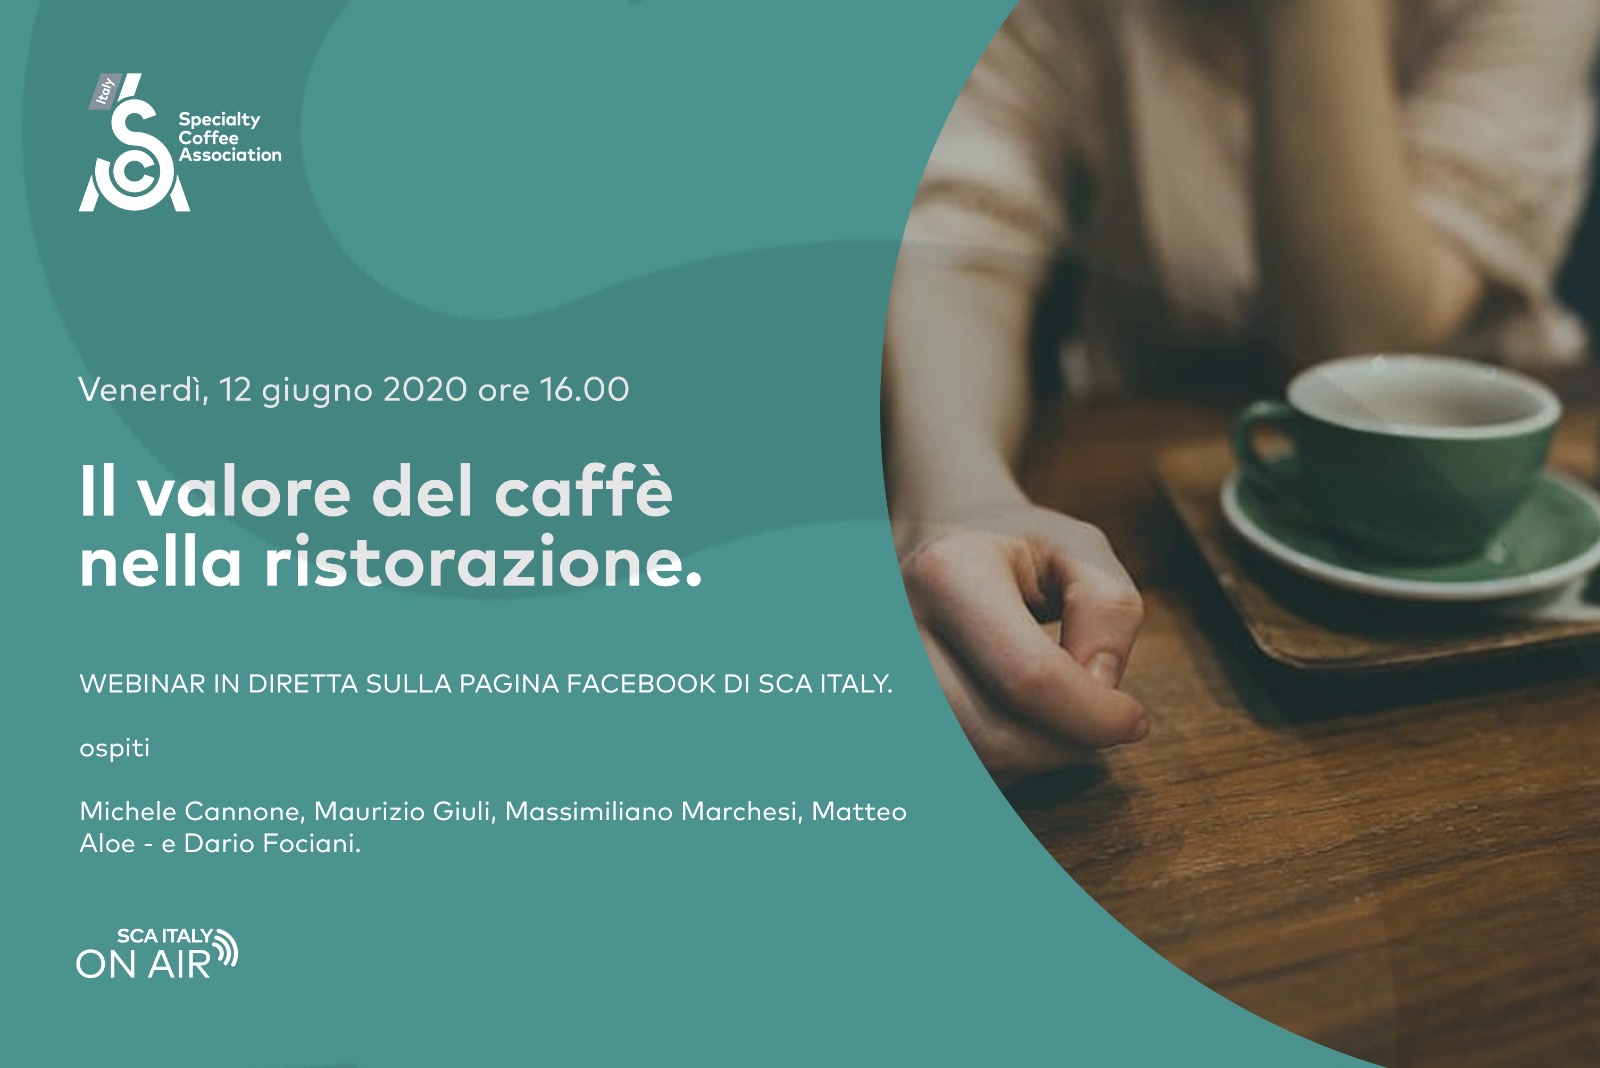 Facebook sca Italy il valore del caffè nella ristorazione